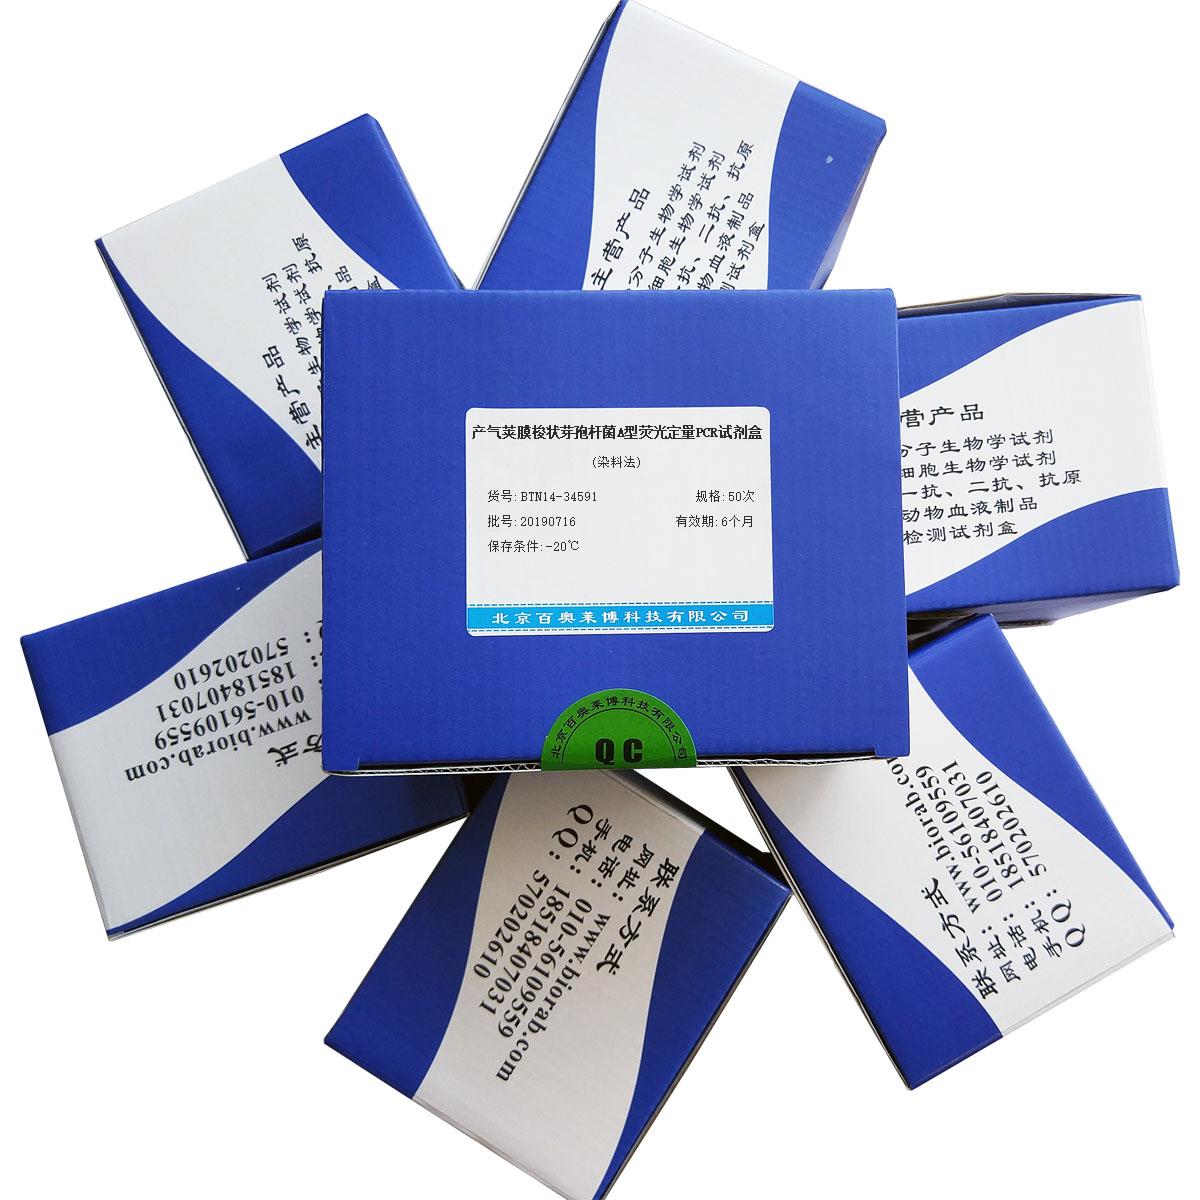 产气荚膜梭状芽孢杆菌A型荧光定量PCR试剂盒(染料法)